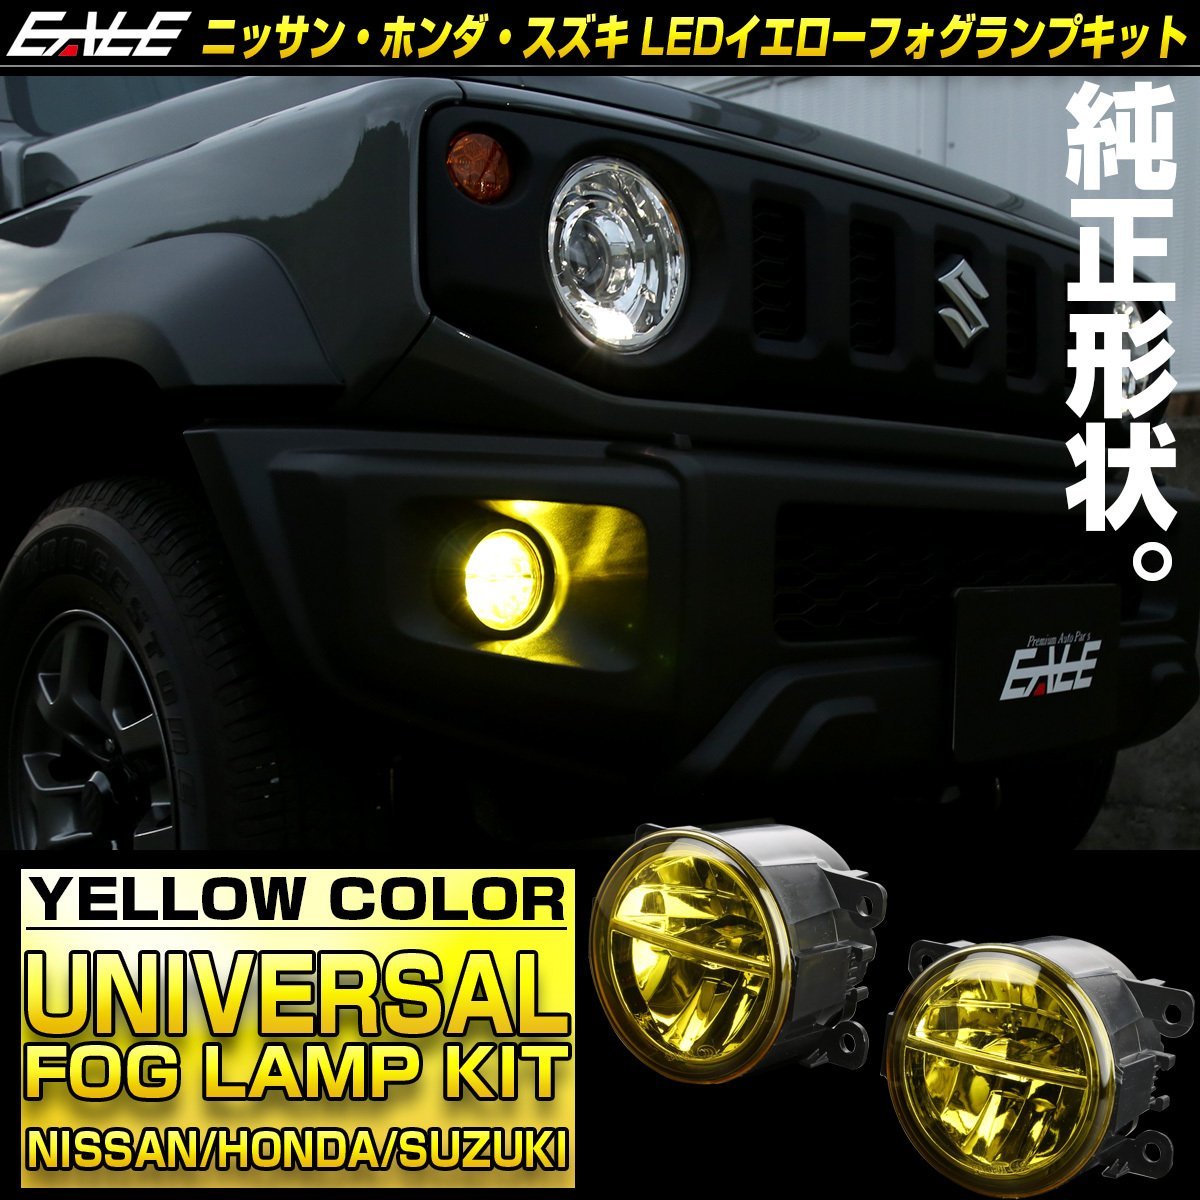  Ниссан Honda Suzuki универсальный LED противотуманая фара желтый оригинальный сменный согласовано большое количество E51 E52 Elgrand B21 Dayz C26 Serena P-325